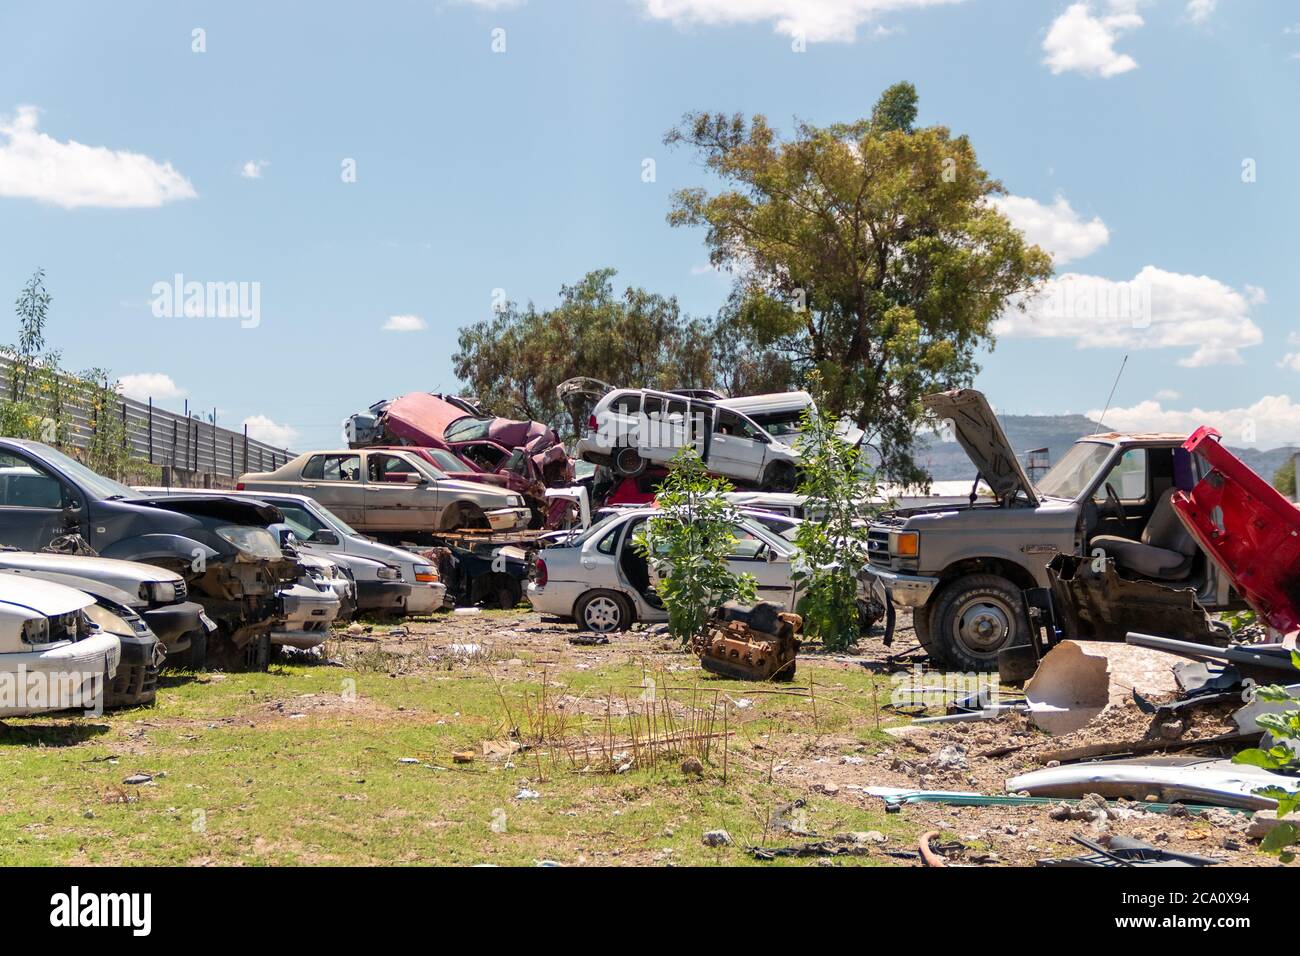 Vieilles voitures endommagées sur le chantier en attente de recyclage à Mexico. Mexique Banque D'Images